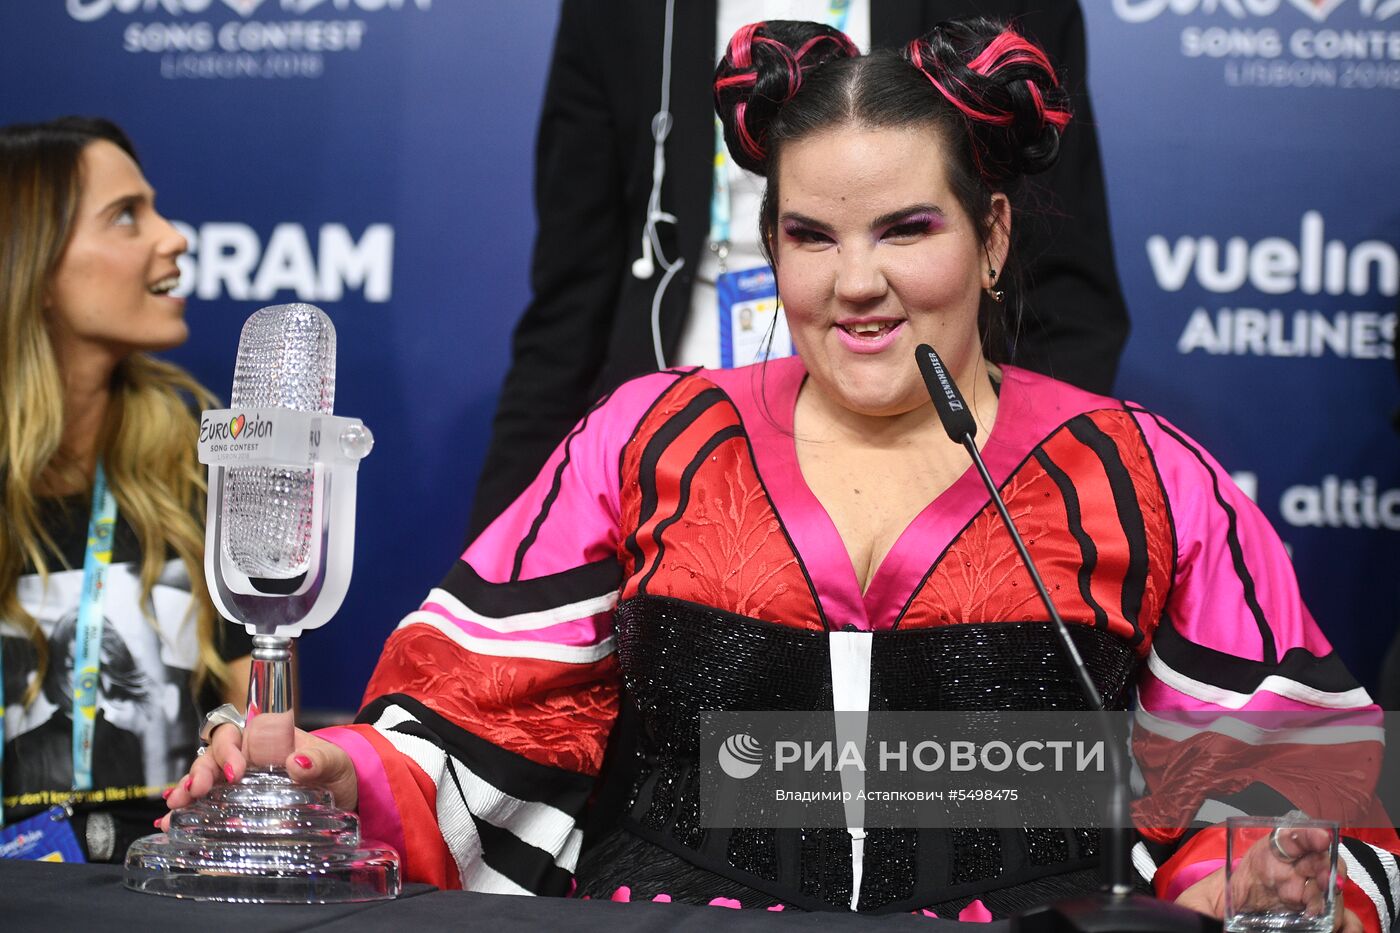 "Евровидение-2018". Финал